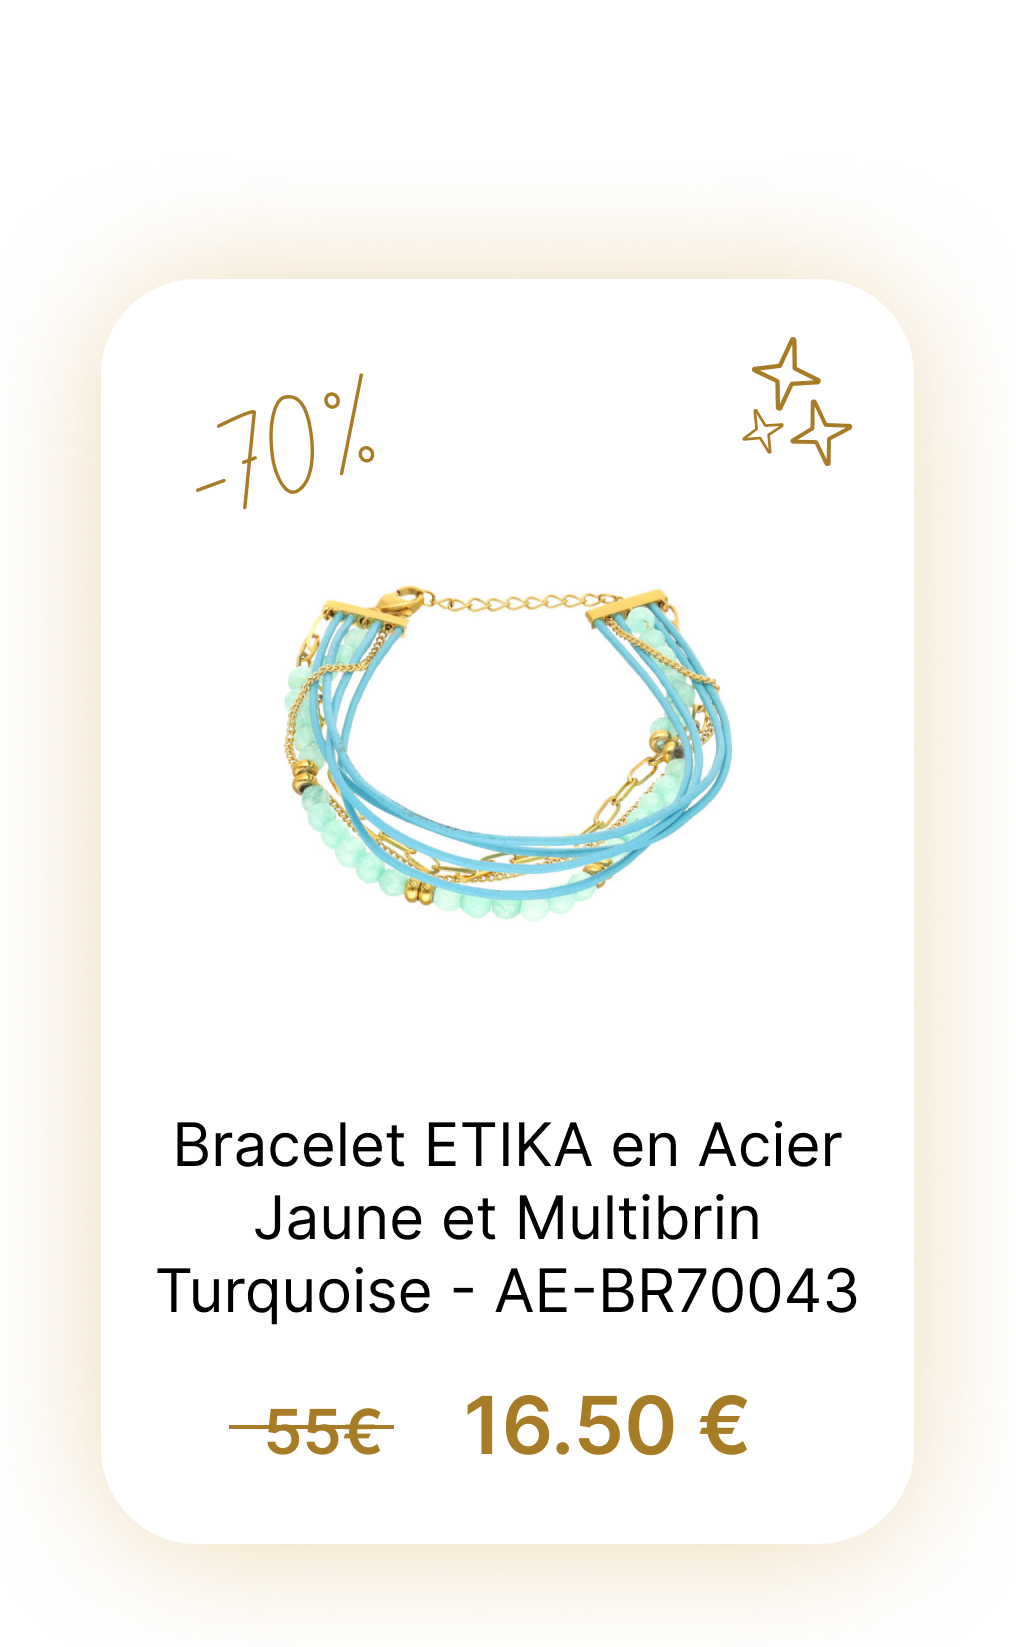 Bracelet ETIKA en Acier Jaune et Multibrin Turquoise - AE-BR70043